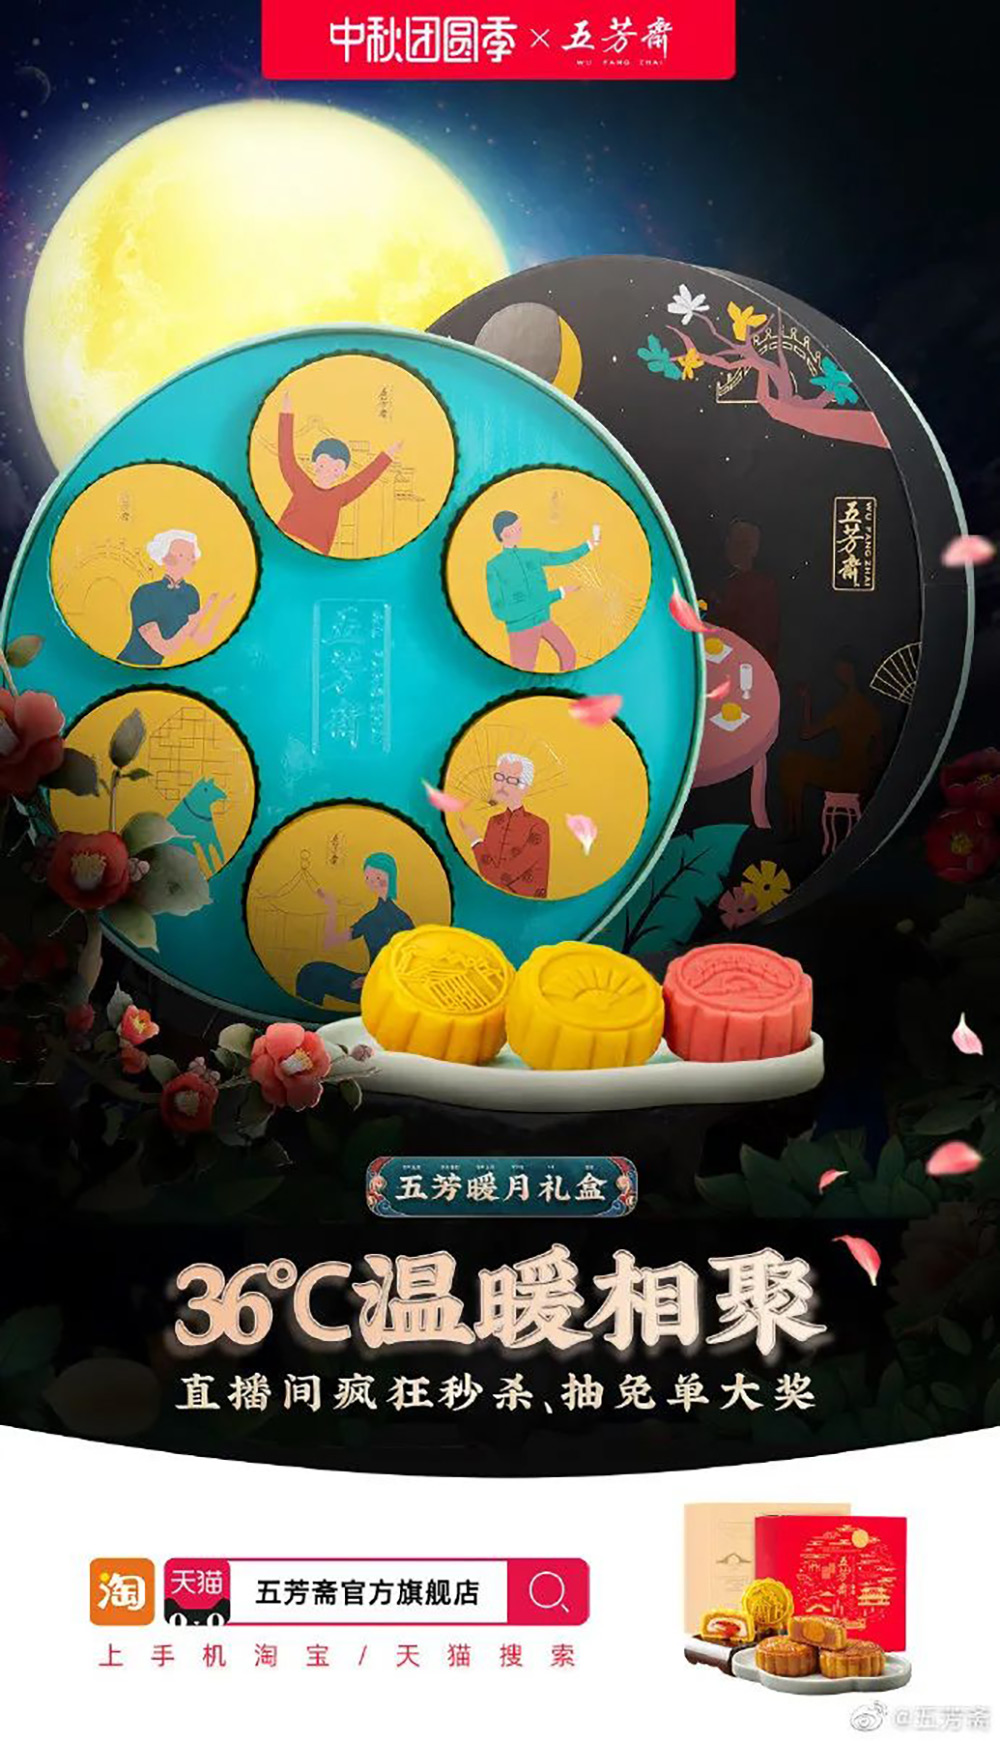 五芳斋食物主题的营销海报设计